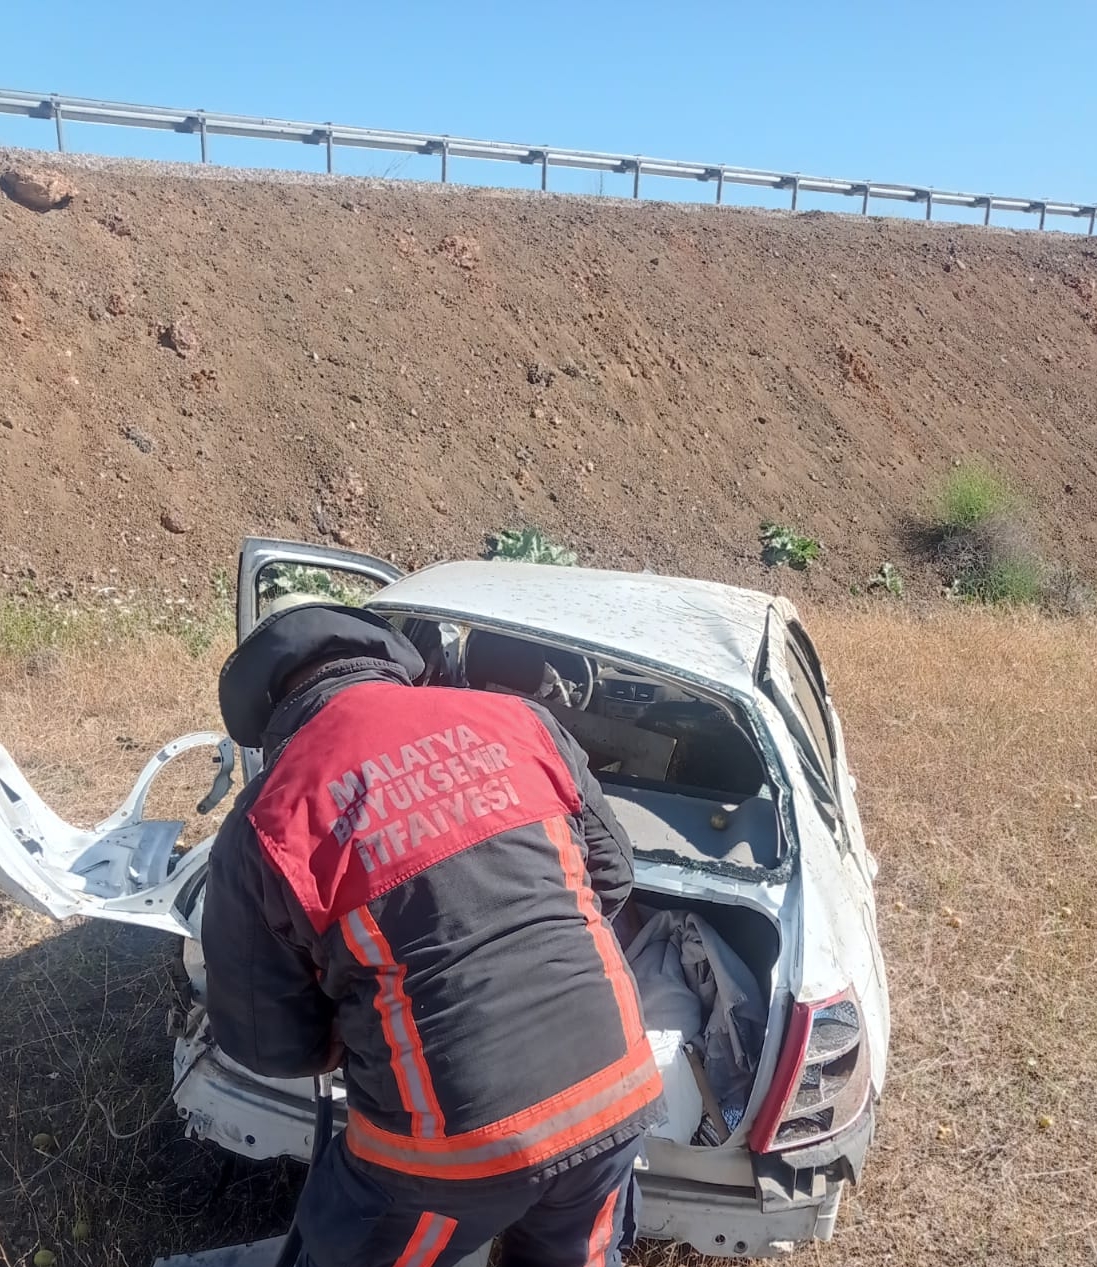 Malatya’da Doğanşehir, Darende ve Kale ilçelerinde meydana gelen 3 ayrı trafik kazasında 4 kişi yaralandı.